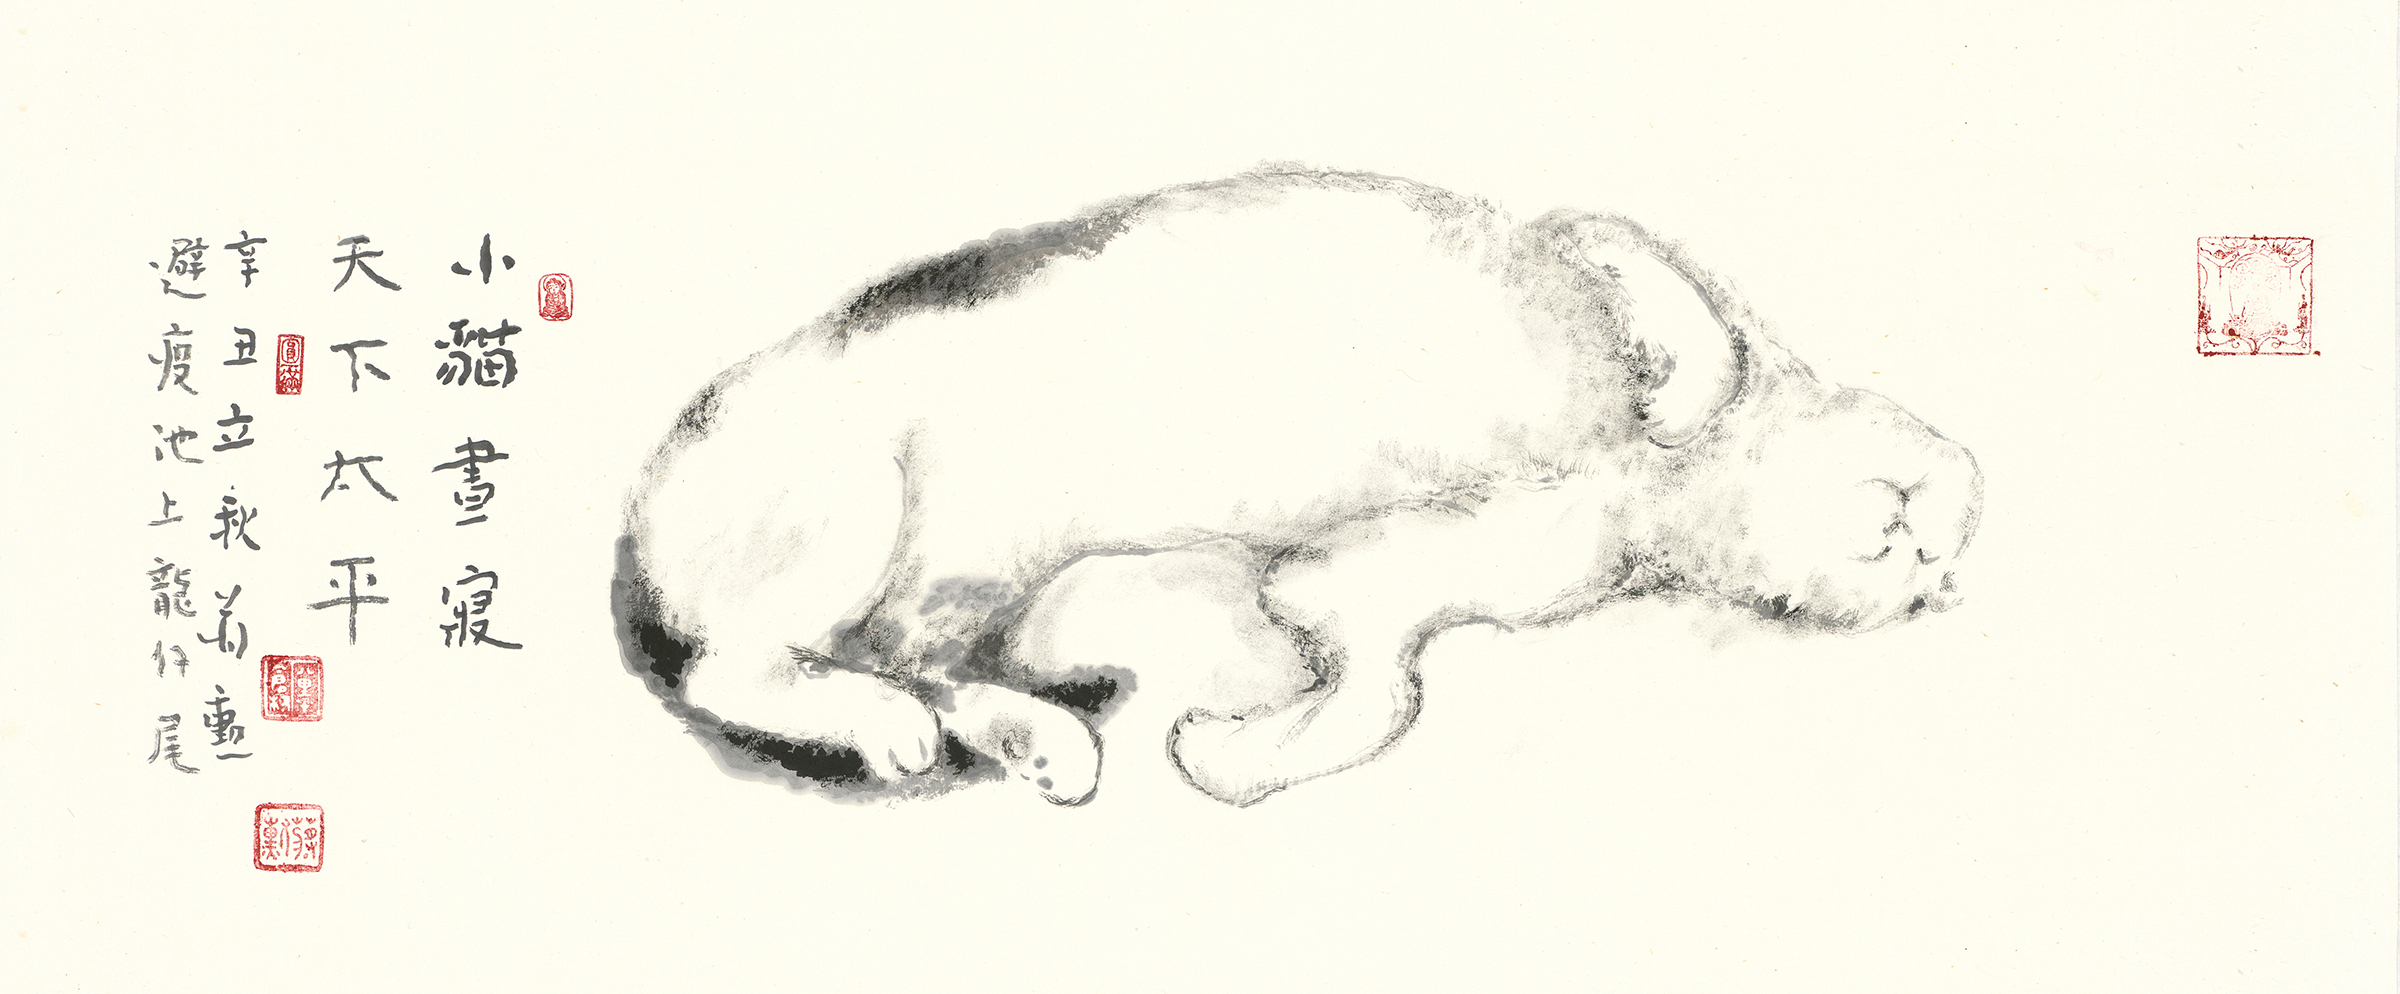 蔣勳,《小貓晝寢》, 2021, 水墨紙本, 32x91.2cm